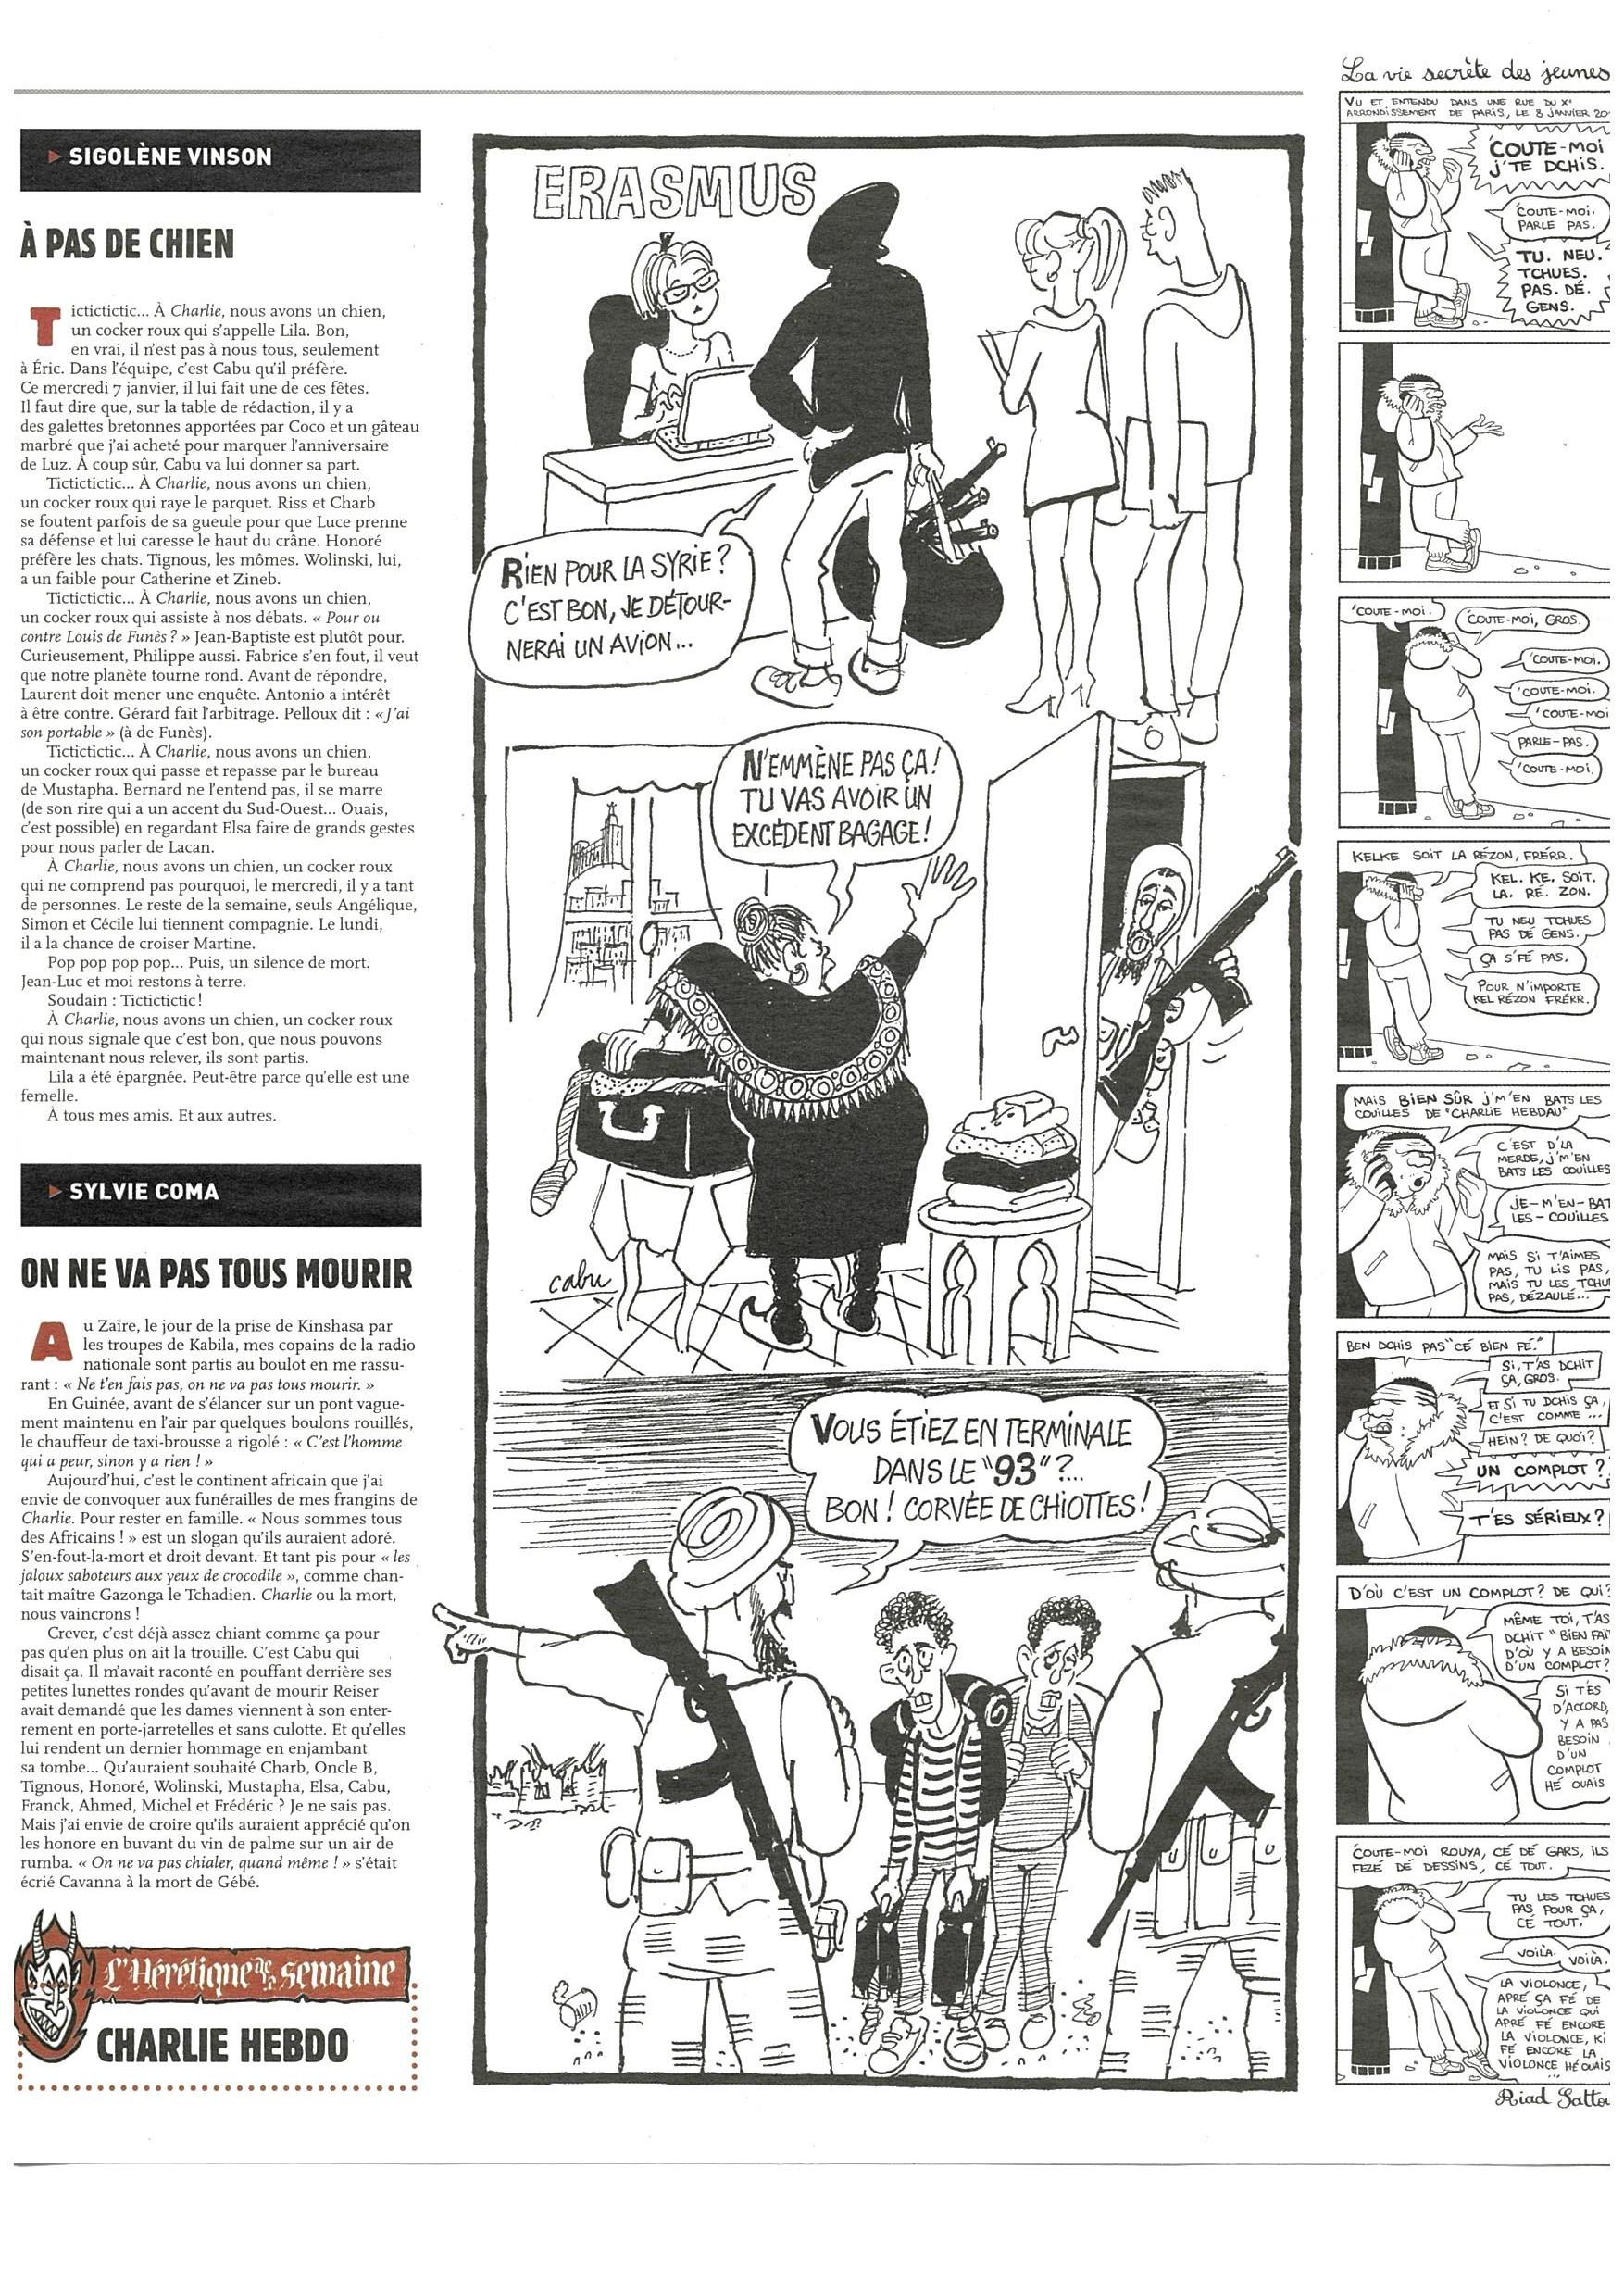 Charlie Hebdo #1178-page-005